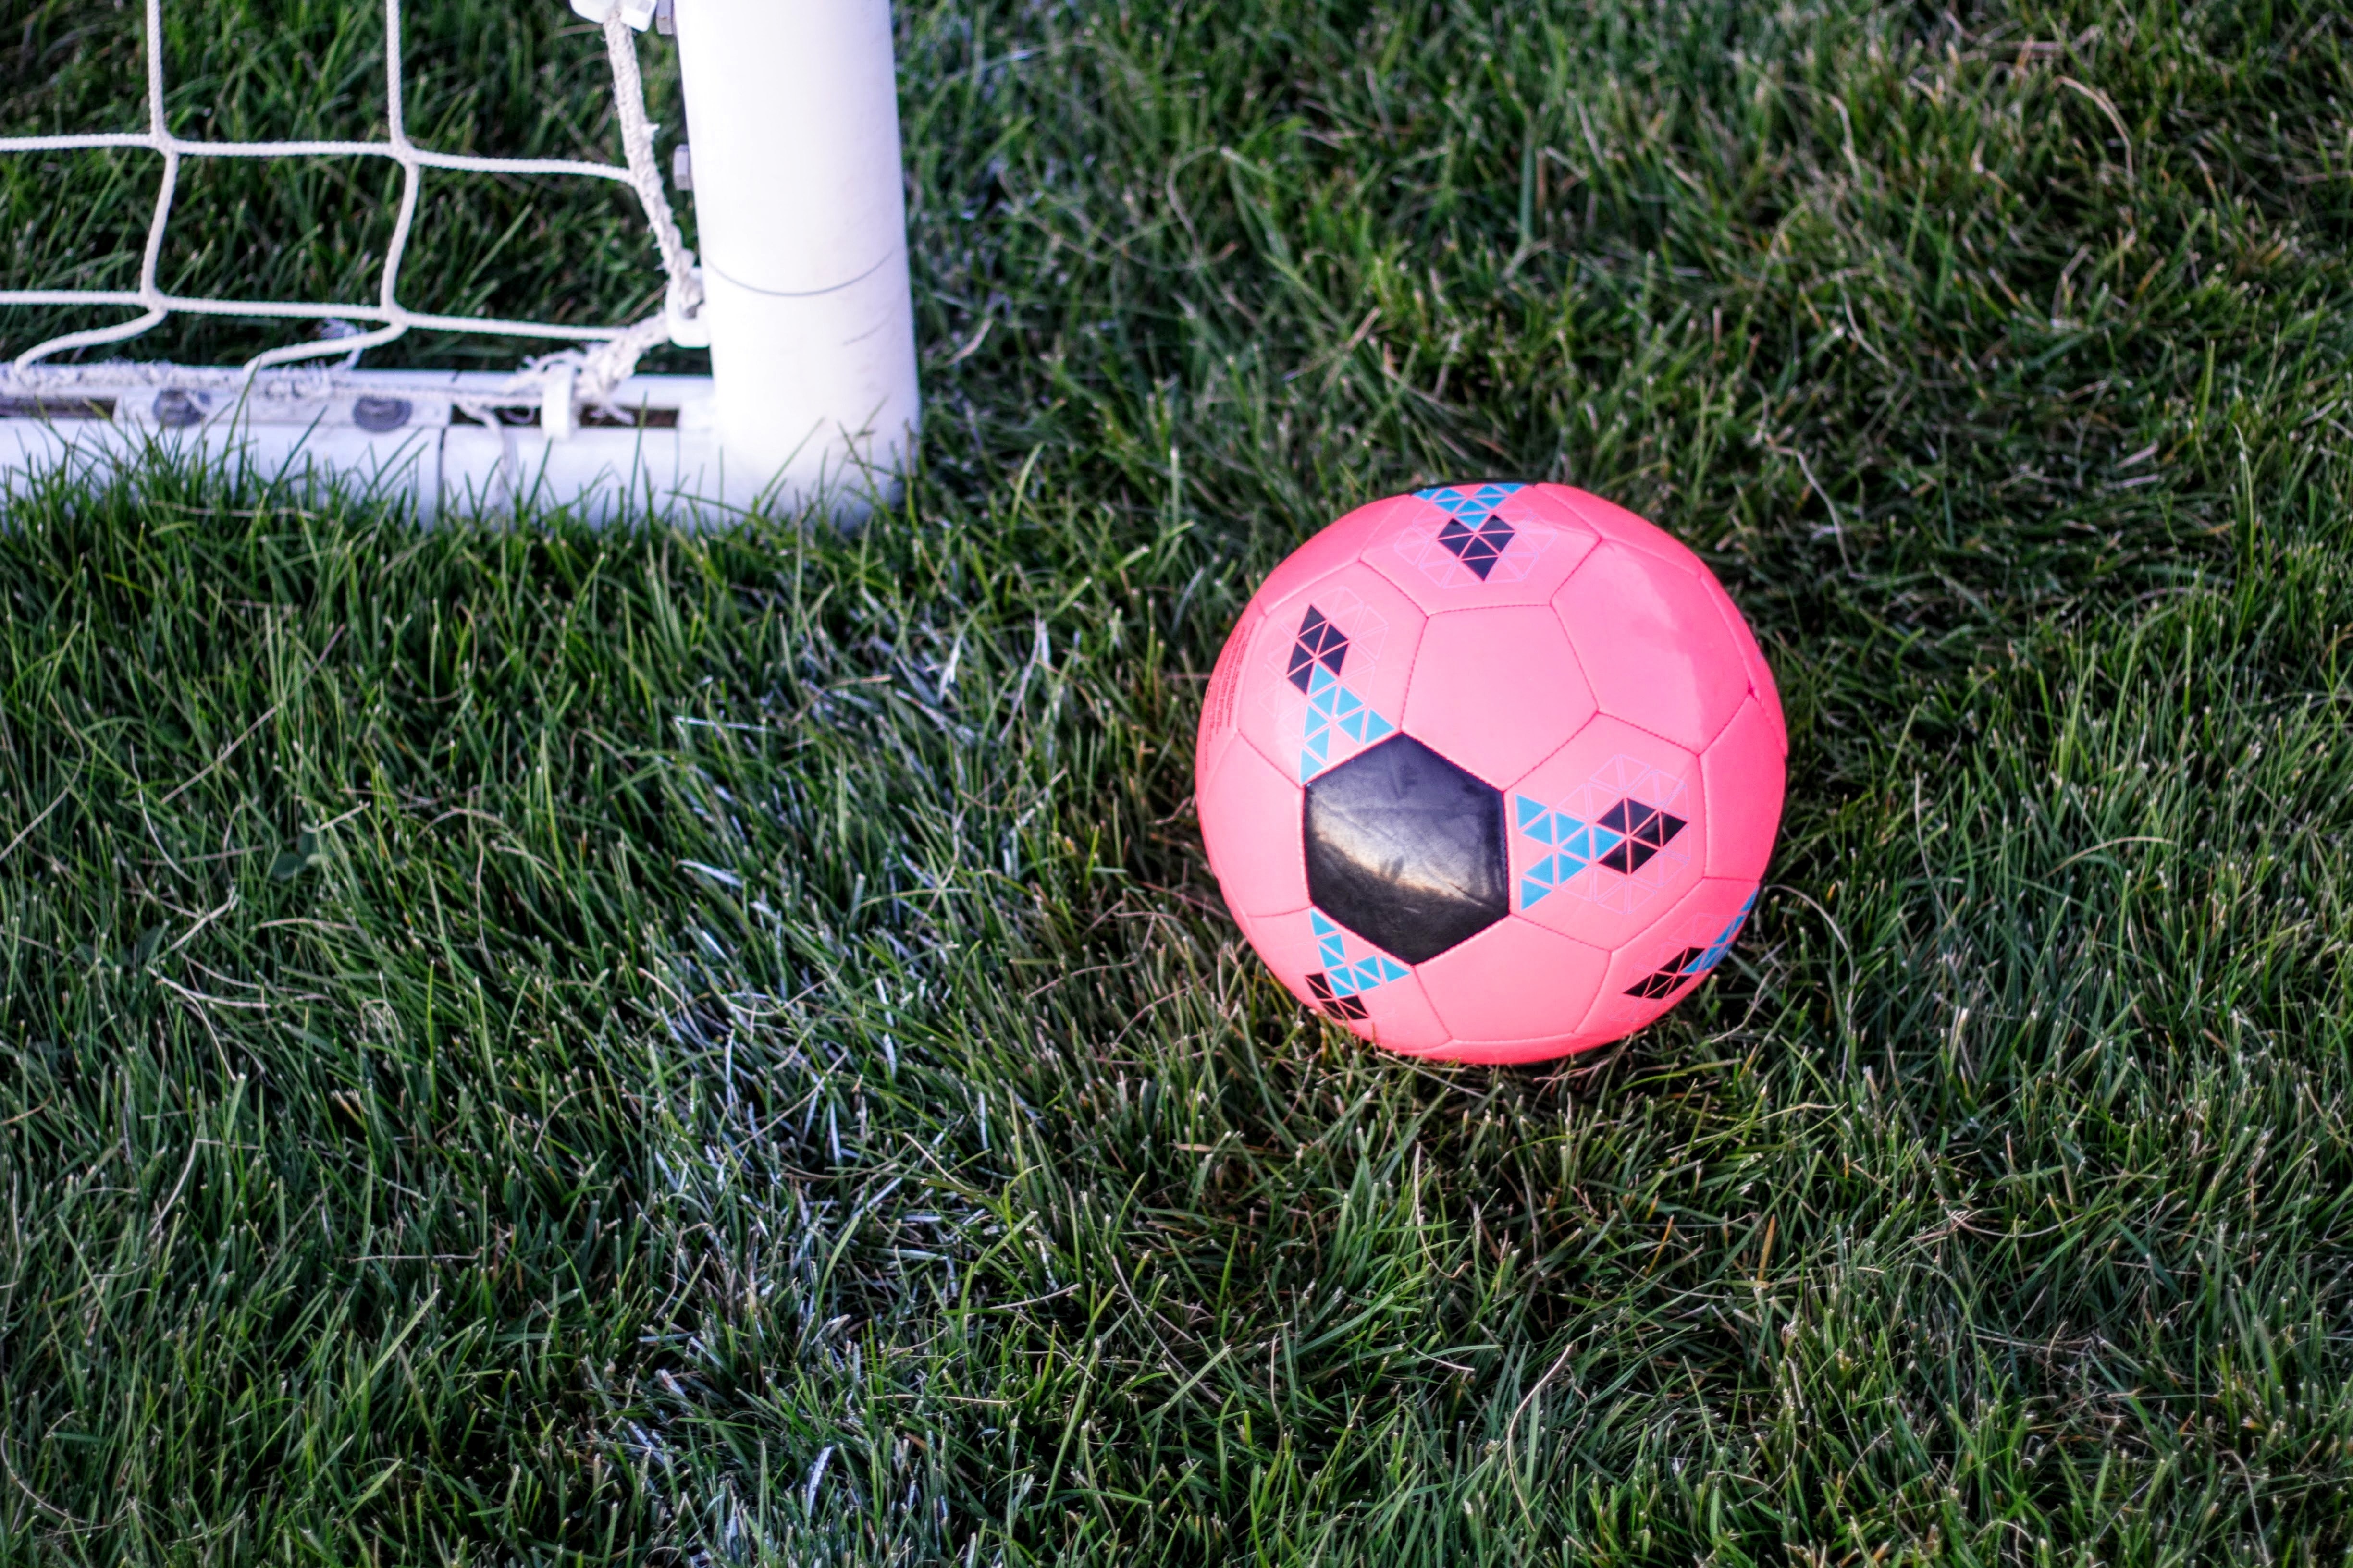 Rosa fotboll ligger på en gräsmatta bredvid ett vitt fotbollsmål